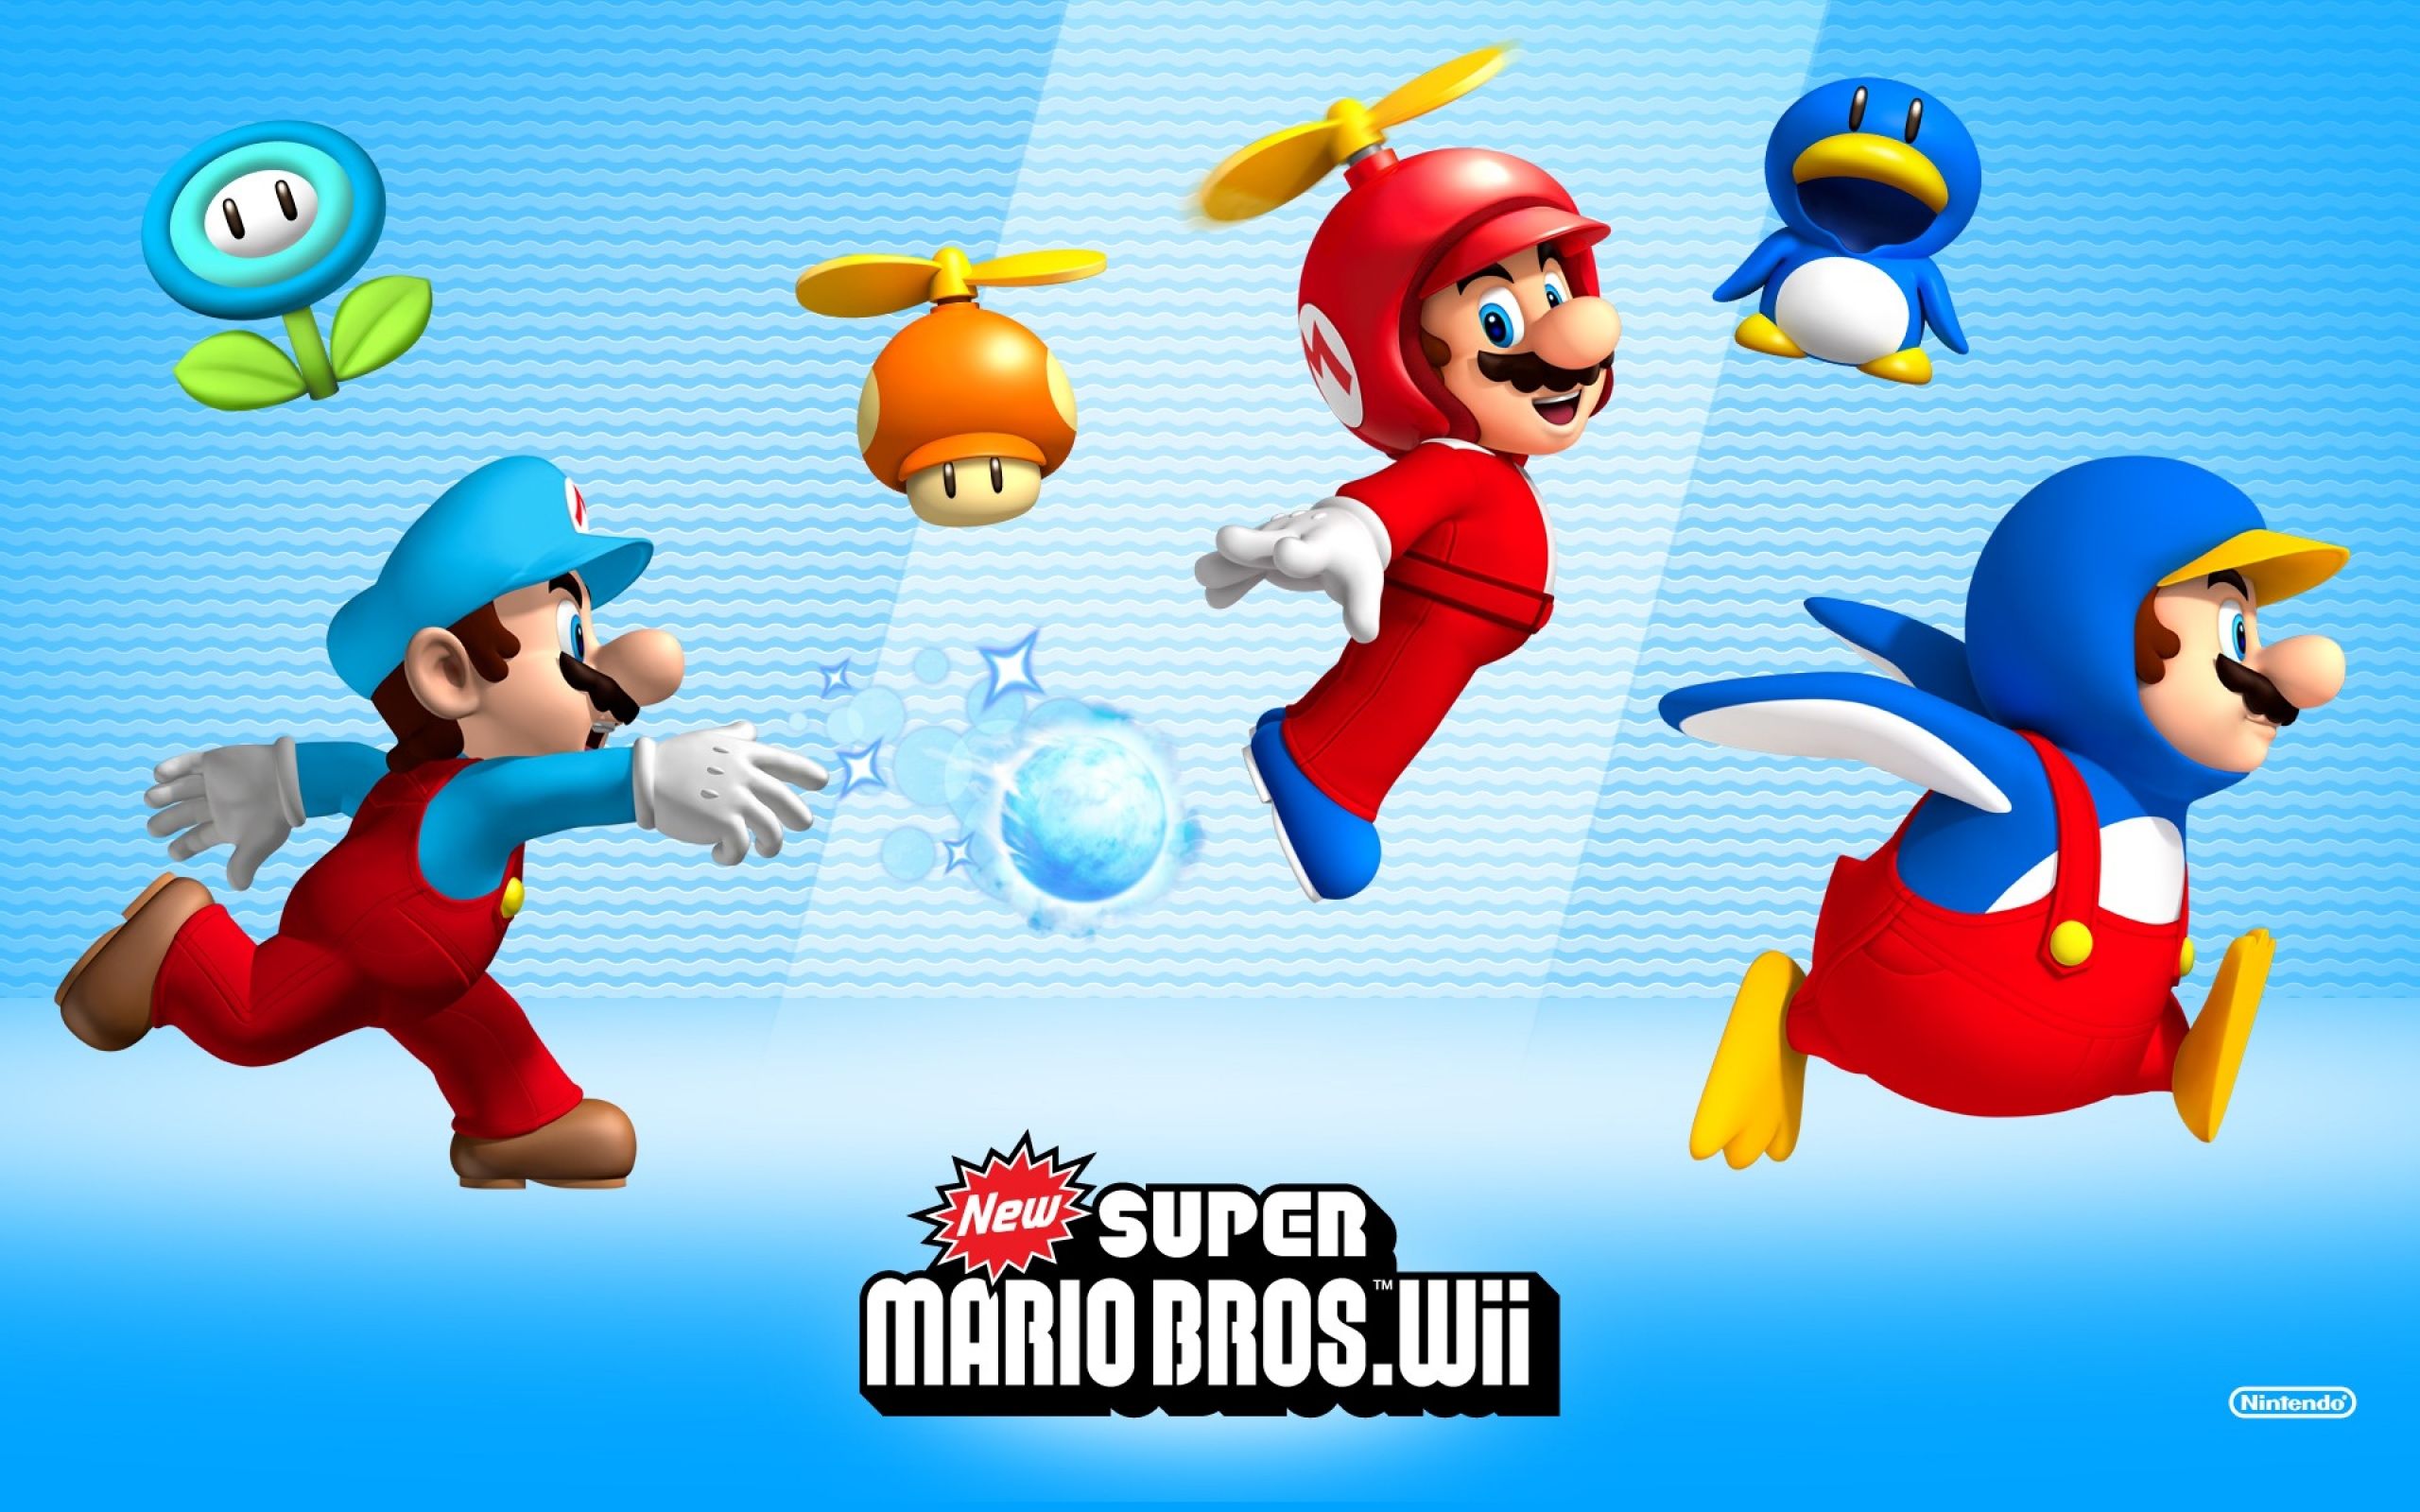 Mario Bros Wallpaper. Smash Bros